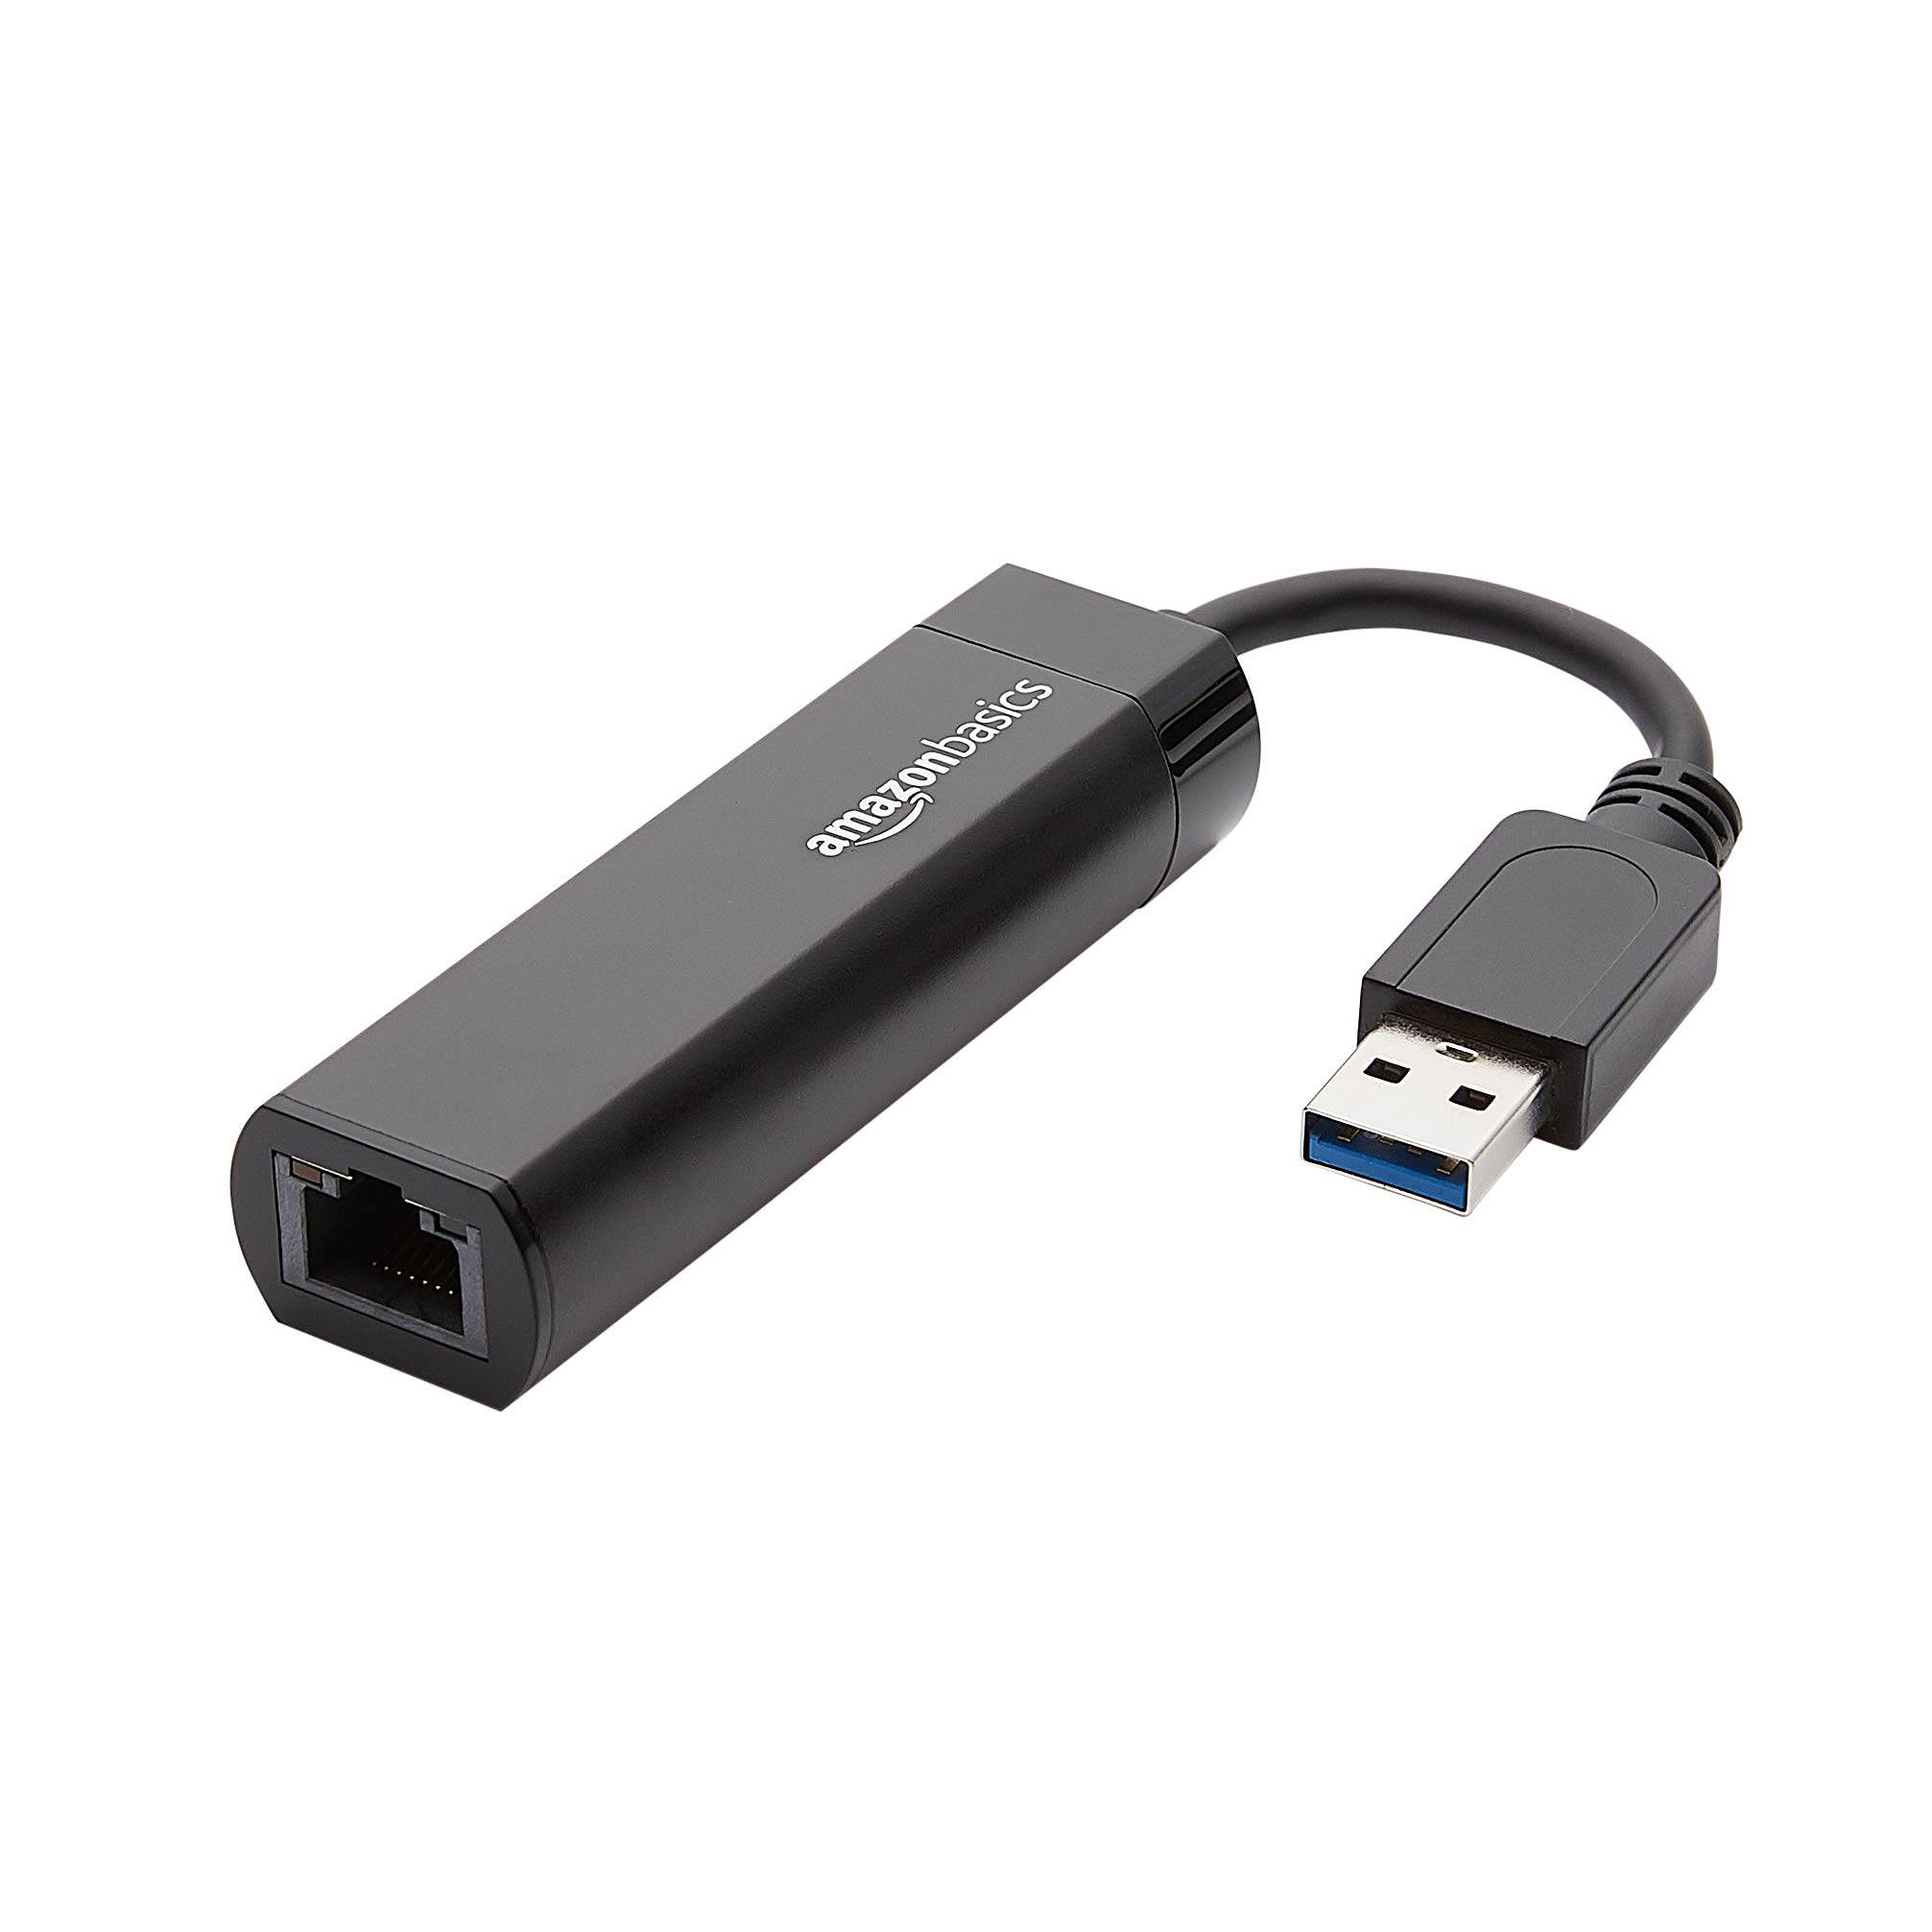 Amazon Basics USB 3.0 to 10/100/1000 Gigabit Ethernet Adapter